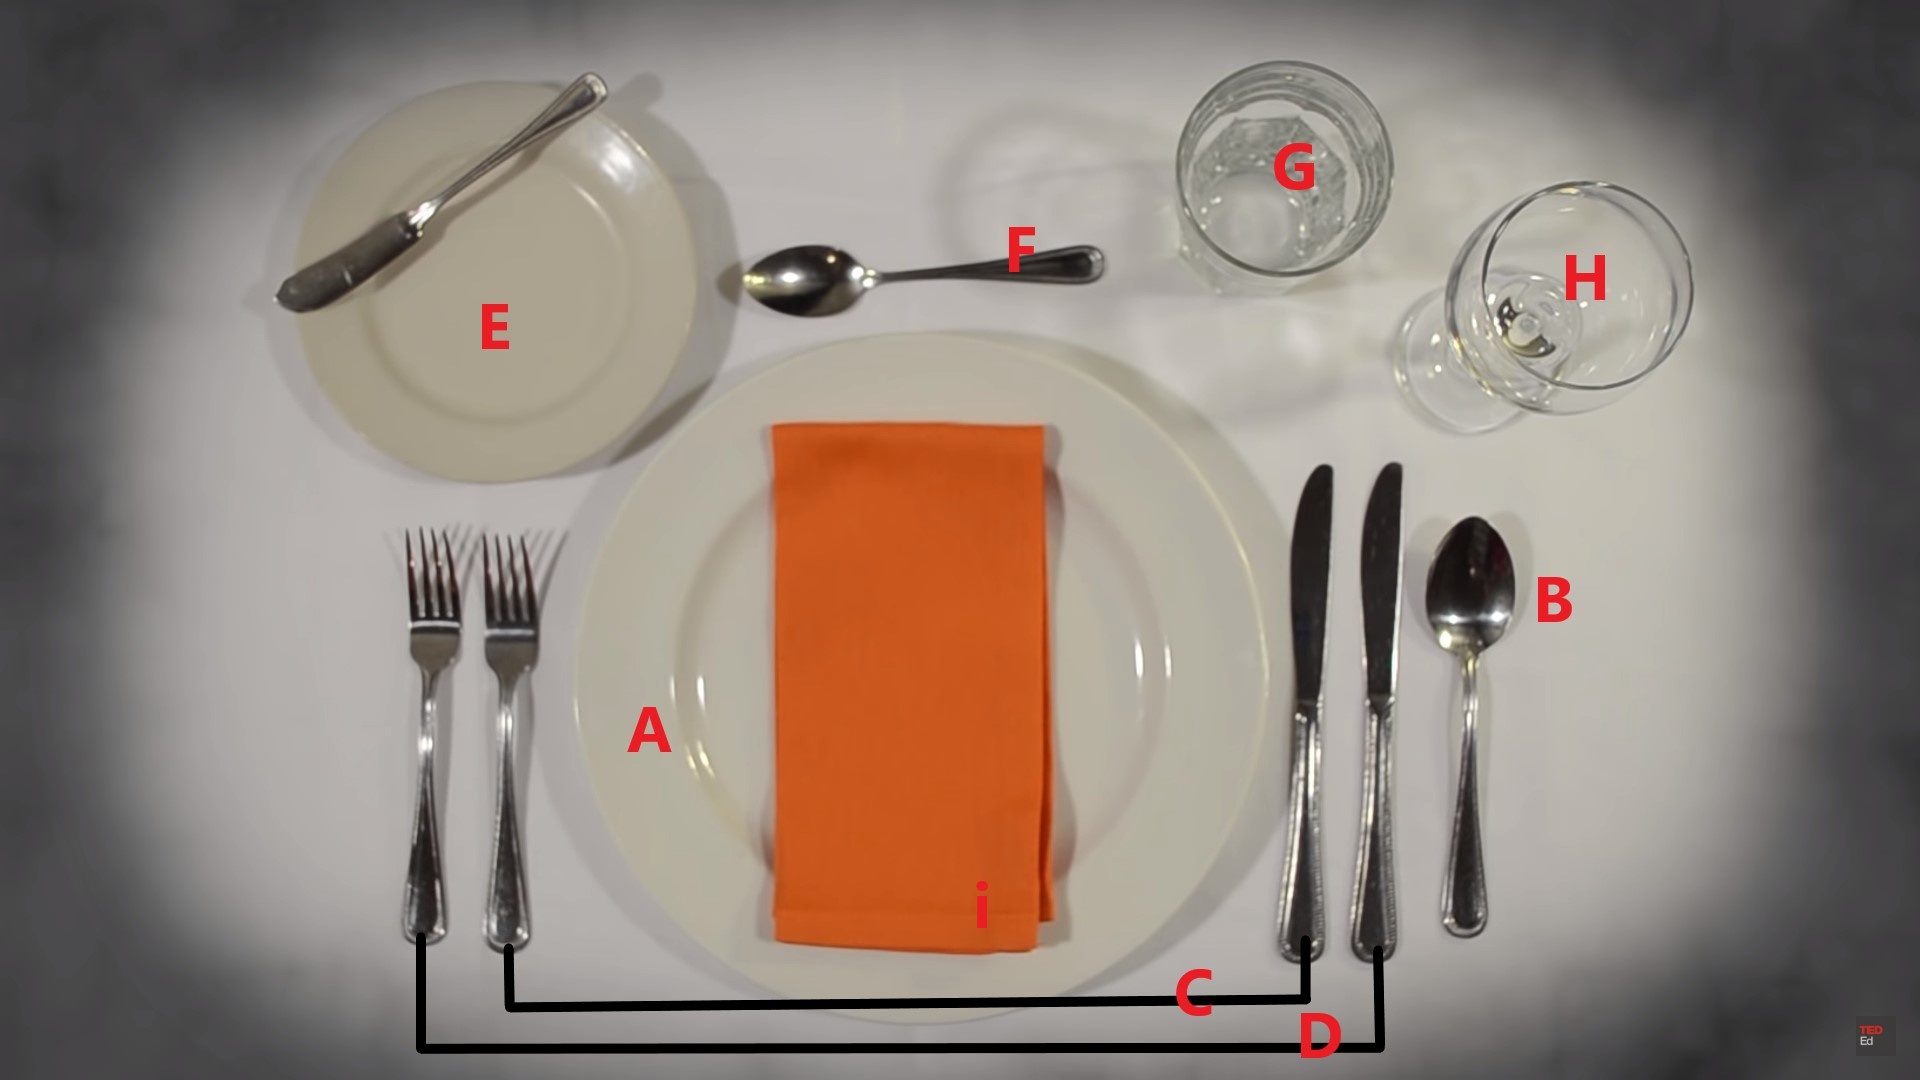 Krachtig Technologie Eenvoud Hoe dek je een tafel volgens de etiquette? - Maison Coton